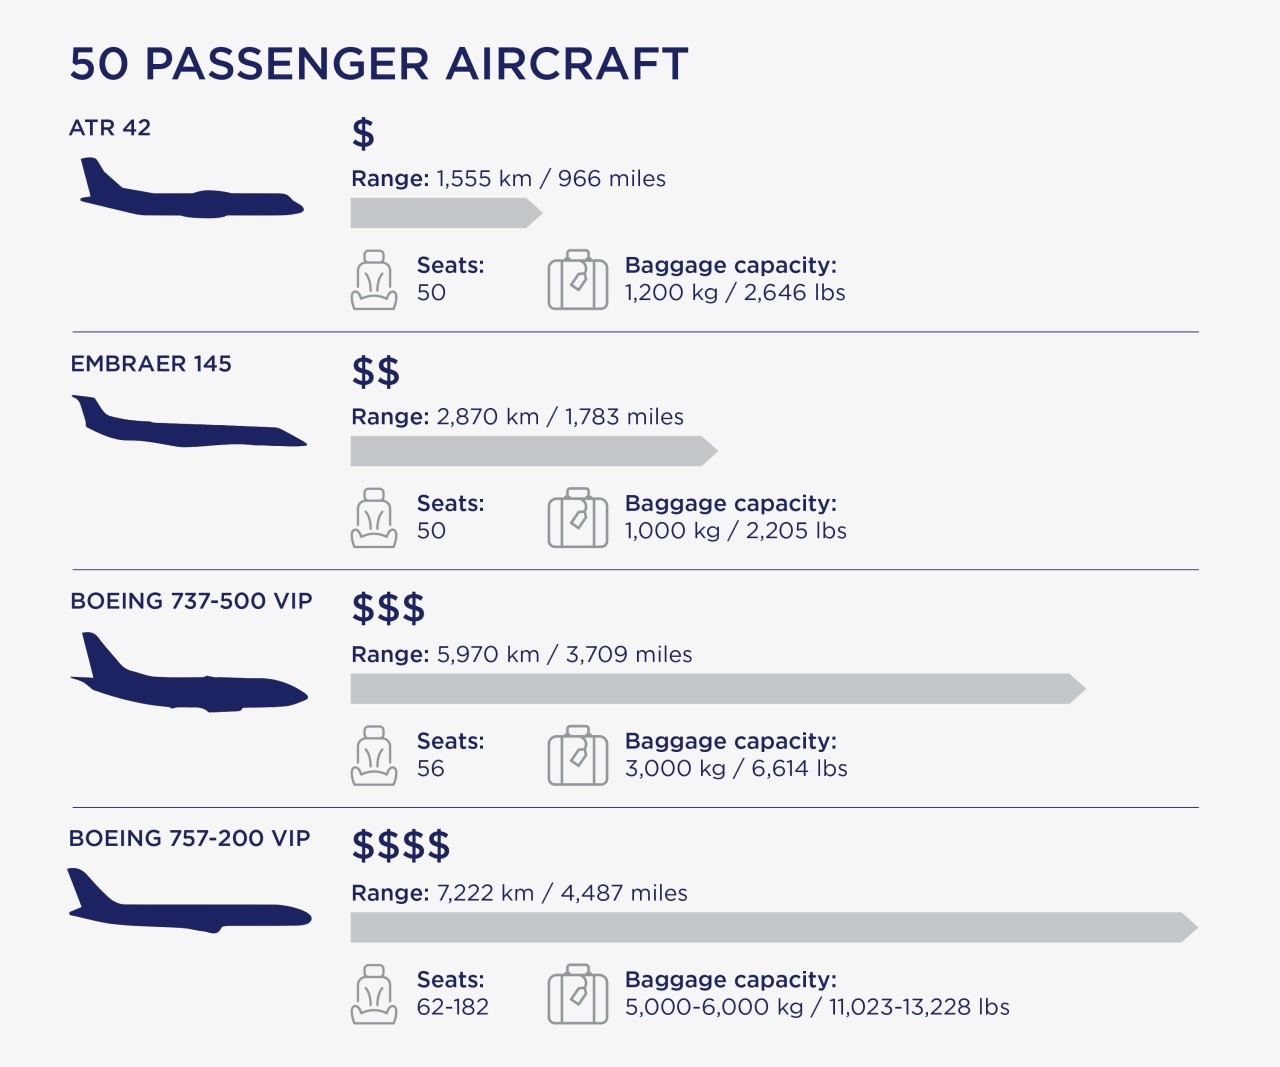 50 passenger aircraft infographic.